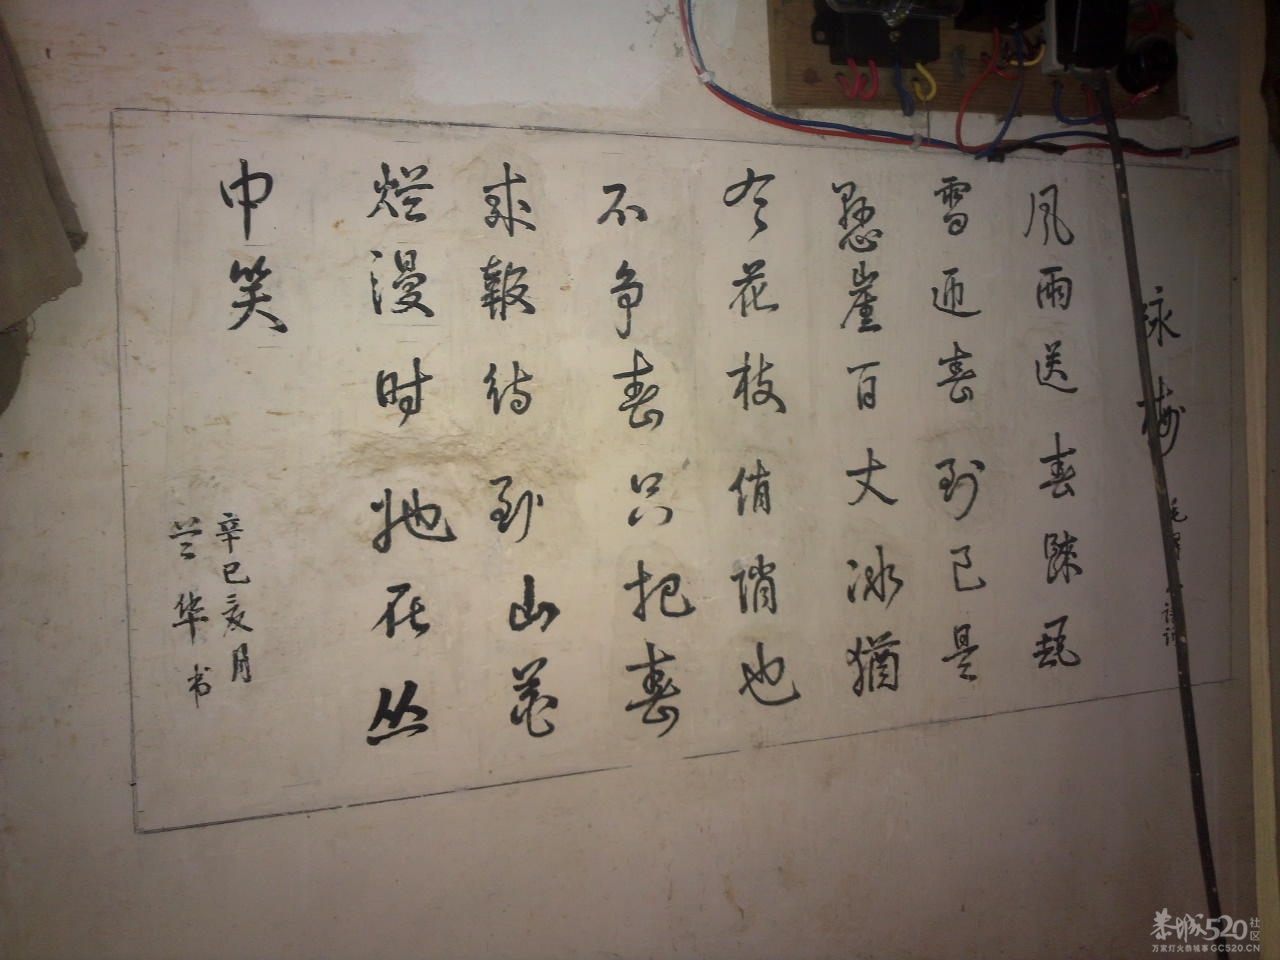 在邓扒村一间民房墙上拍到的诗词839 / 作者:金网 / 帖子ID:11390